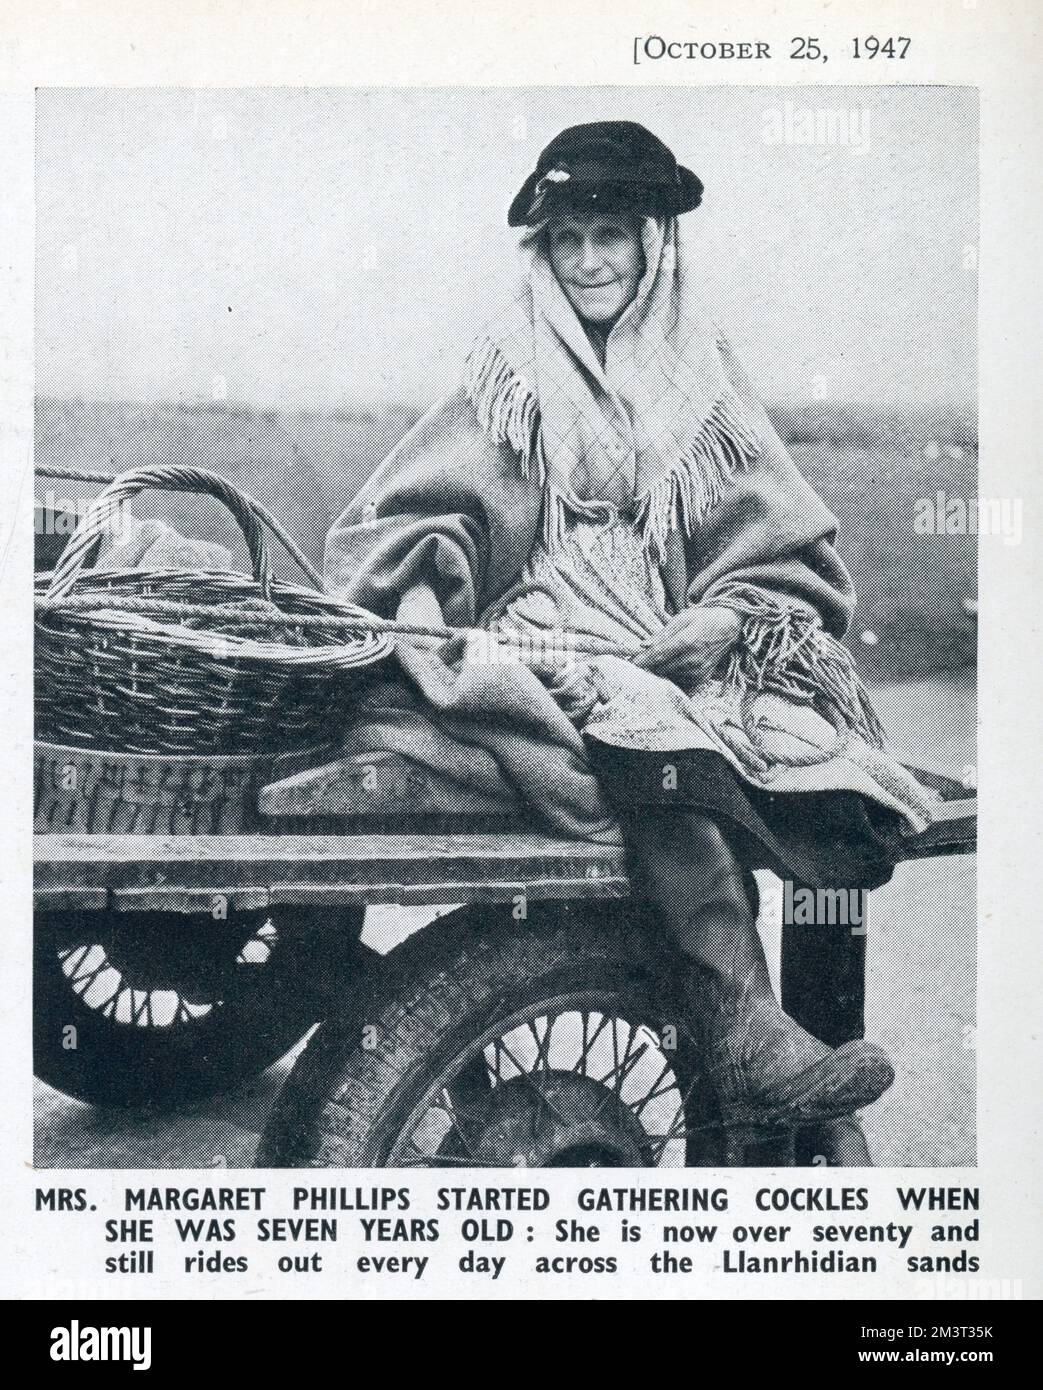 The Cockle Women of Gower : une industrie ancienne sur les sables de Llanrhidian, au sud du pays de Galles. Mme Margaret Philips a commencé à rassembler des coques à l'âge de sept ans : au moment de cette photo, elle avait plus de soixante-dix ans et elle circulait toujours tous les jours à travers les sables Llanrhidian. Banque D'Images